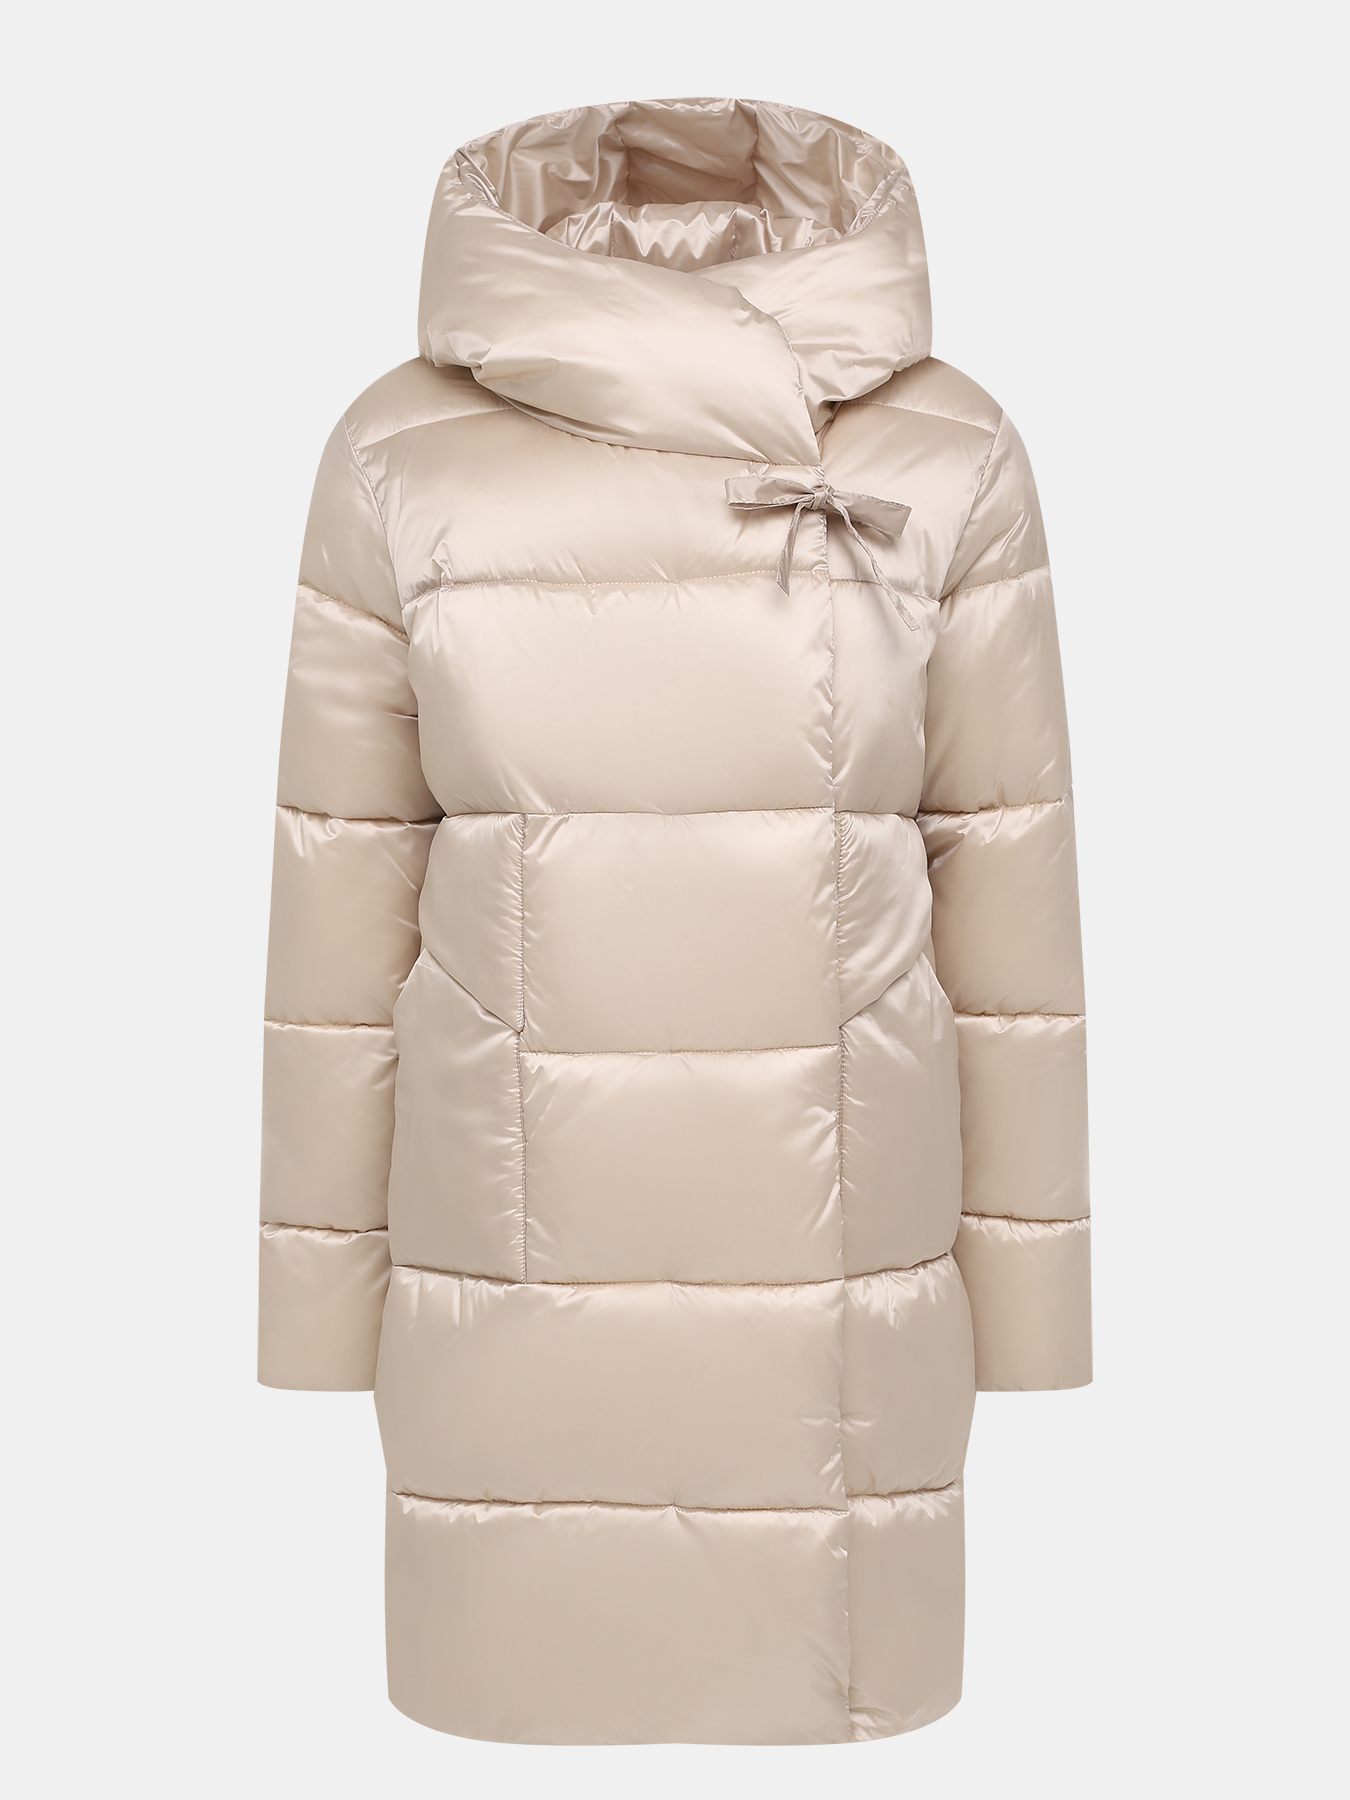 Пальто зимнее Maritta 433565-020, цвет бежевый, размер 44